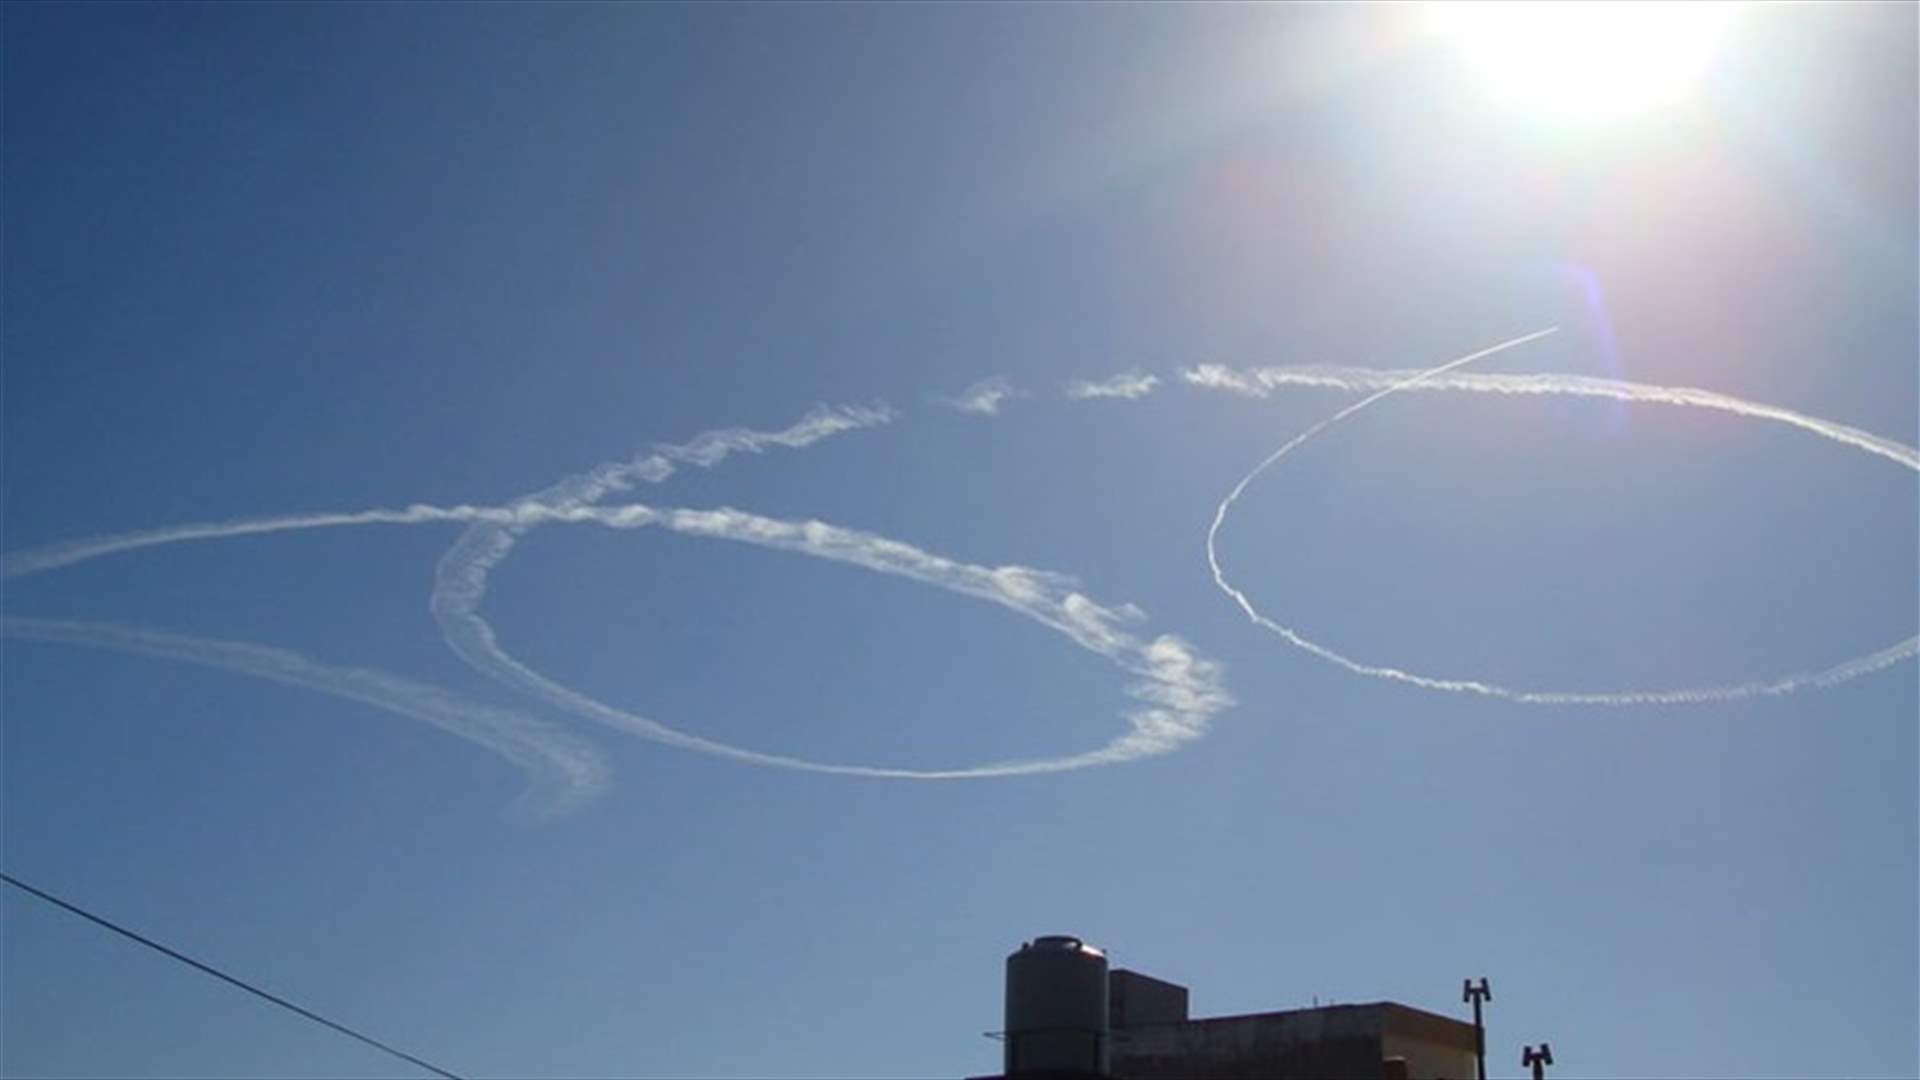 عشر طائرات حربية و5 استطلاعية اسرائيلية خرقت الأجواء اللبنانية اليوم